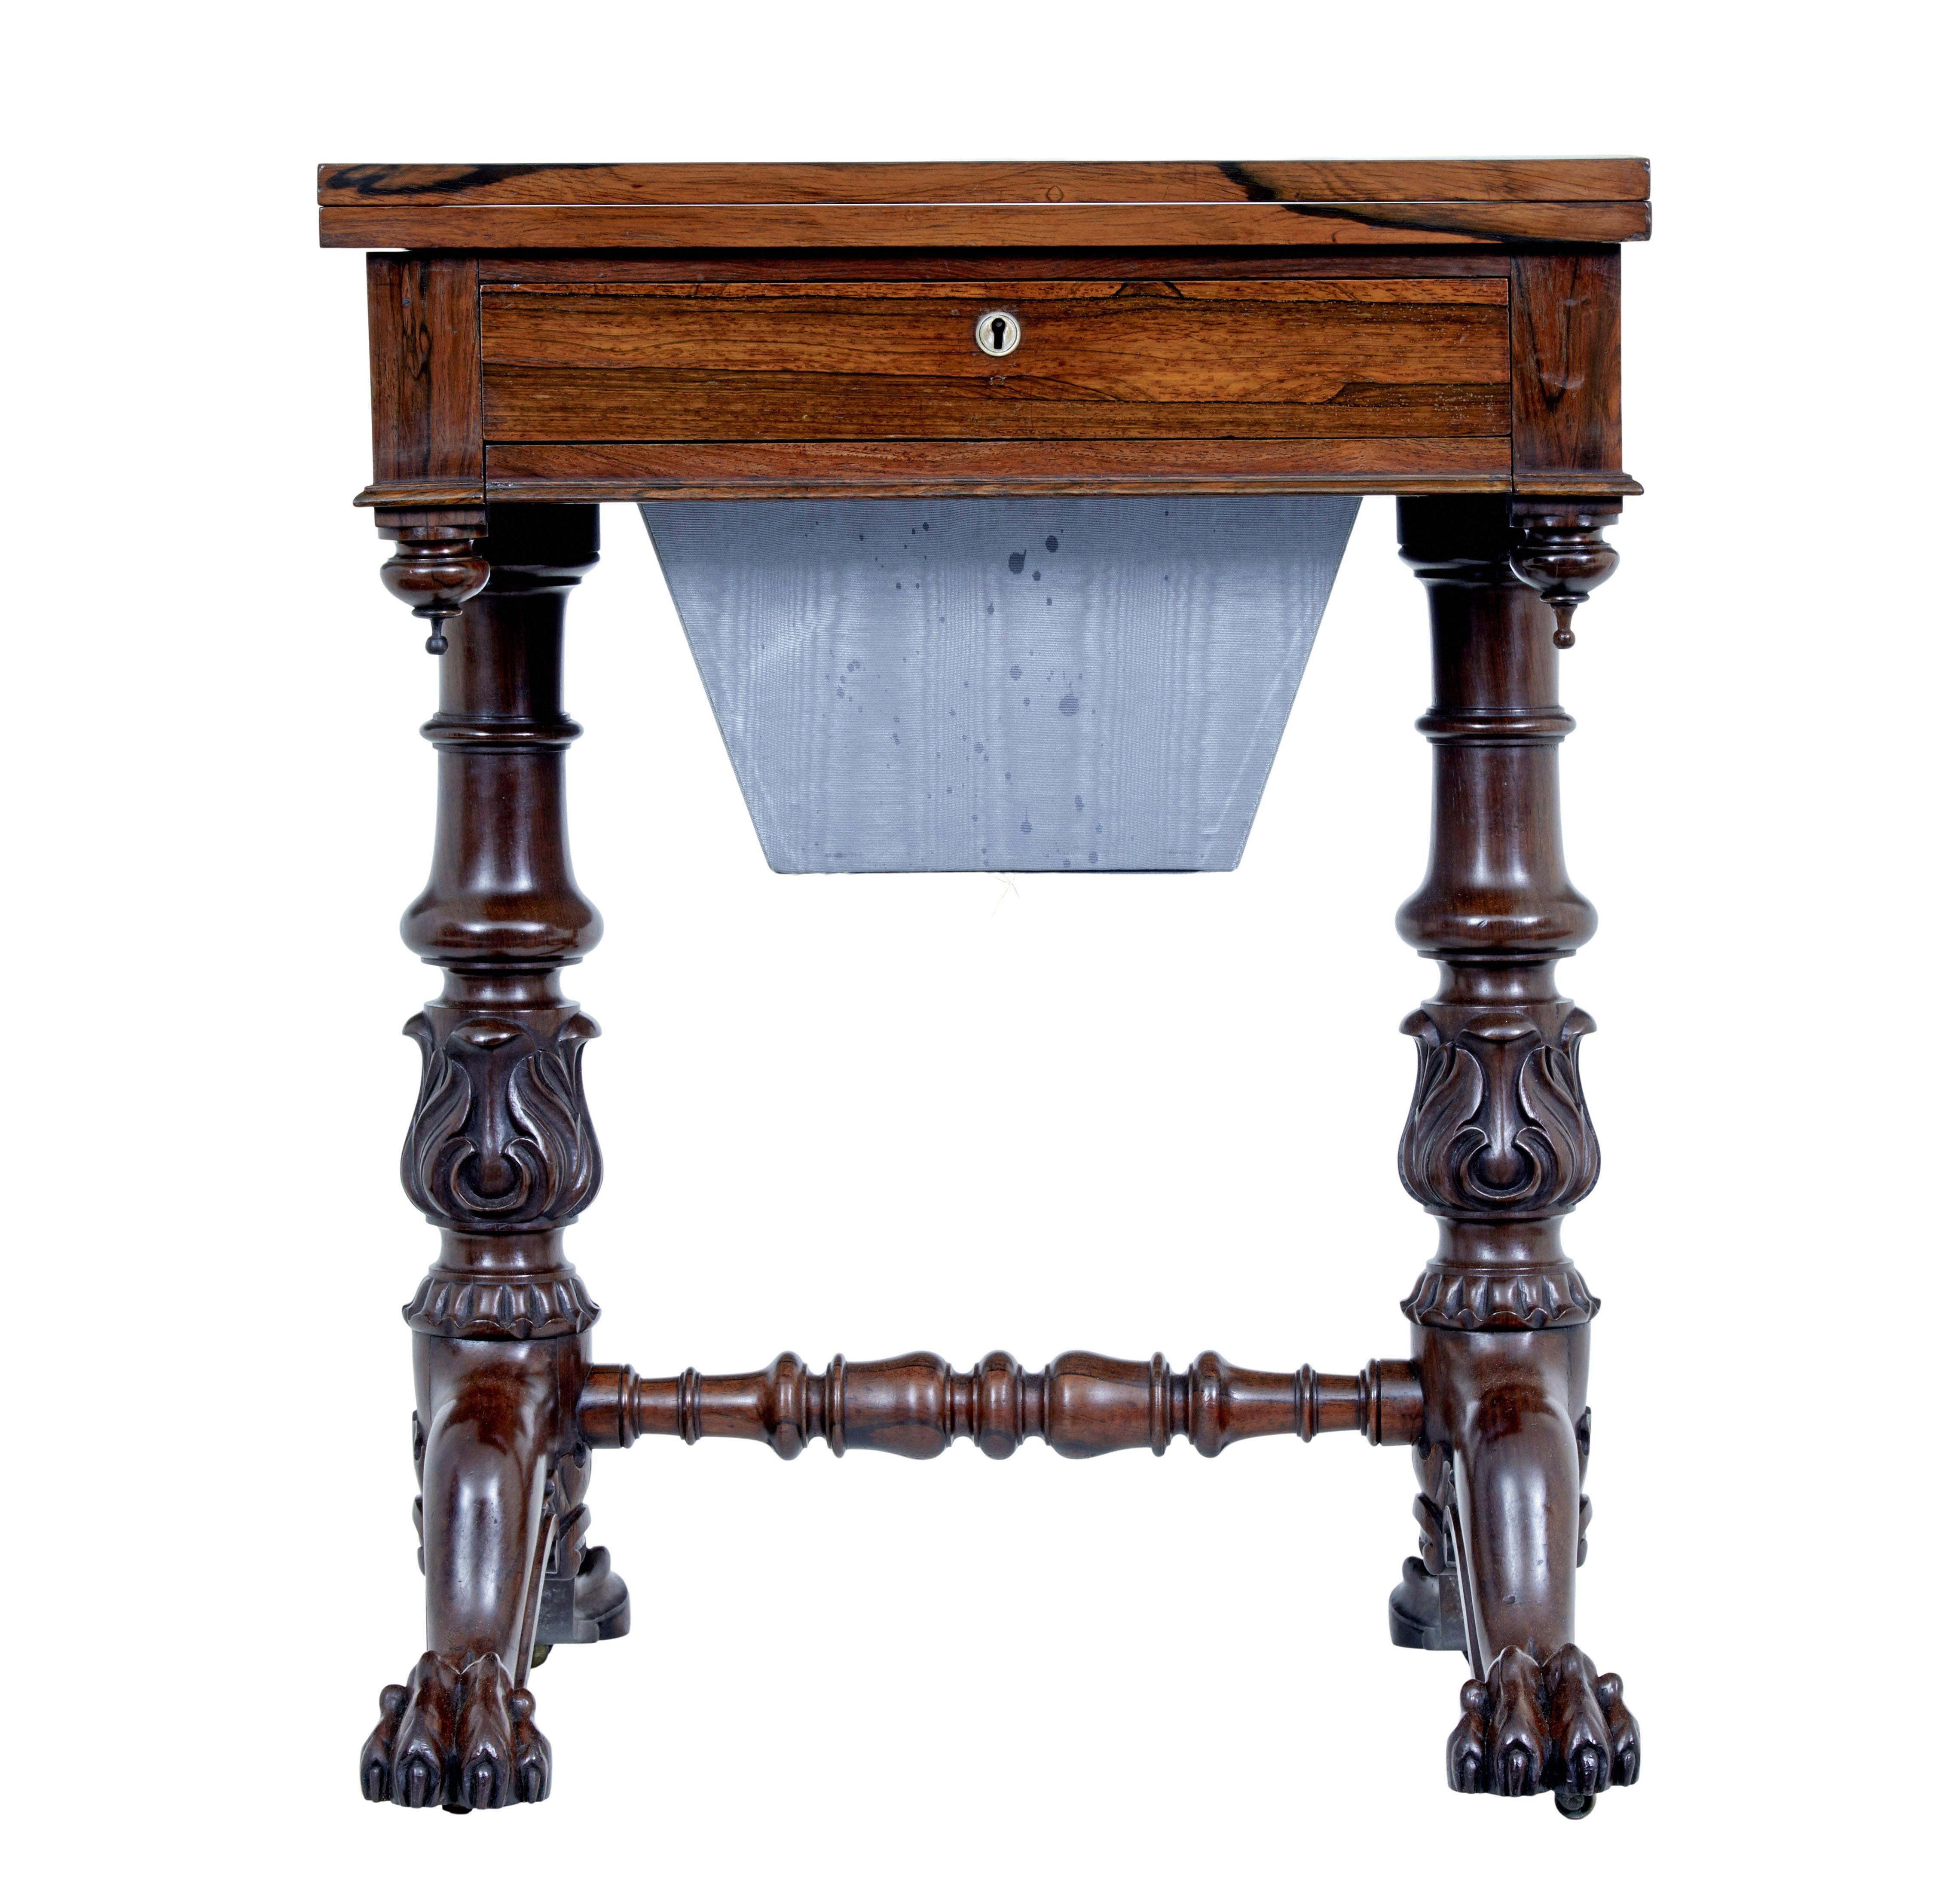 William iv Table de travail en palissandre du XIXe siècle, vers 1830.

Fabriqué en palissandre, il est doté d'un plateau rectangulaire qui pivote et s'ouvre pour former une plus grande surface. Un seul tiroir doublé de soie sous le plateau